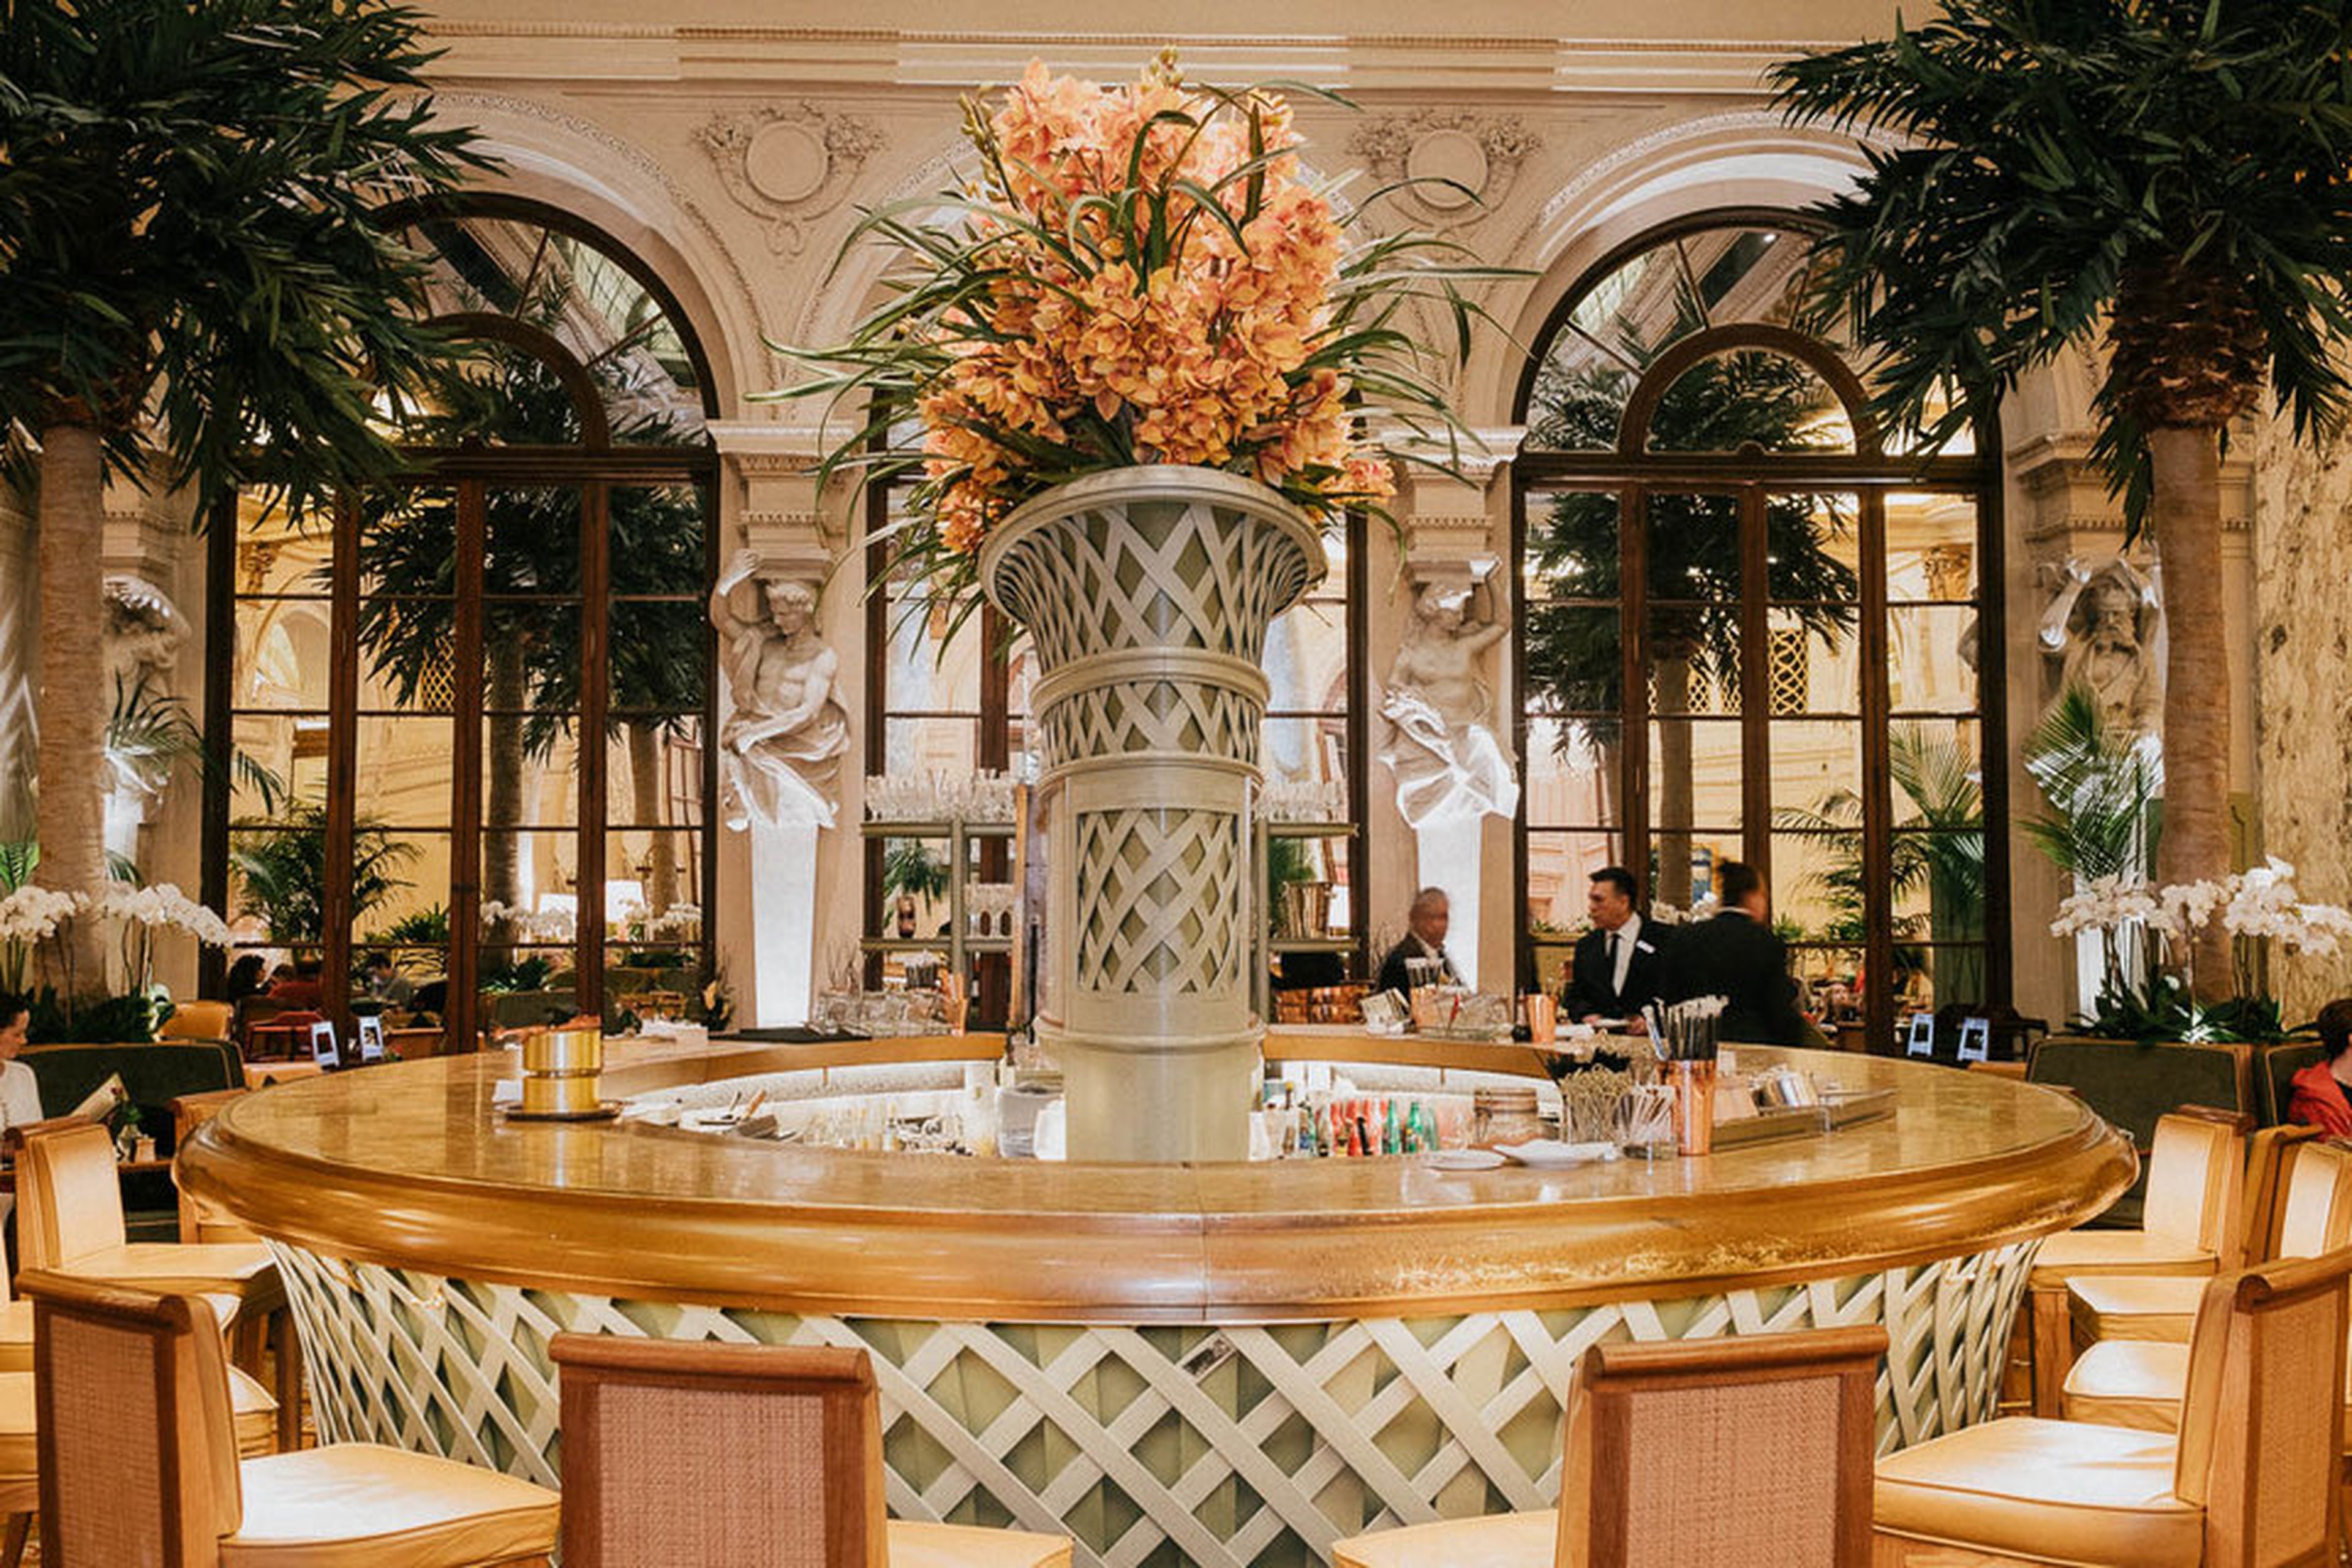 La joya de la corona de The Plaza puede ser Palm Court, que sirve desayunos, té, bocadillos y cócteles nocturnos. Este lugar ha aparecido en muchas novelas y películas populares, incluyendo The Great Gatsby.